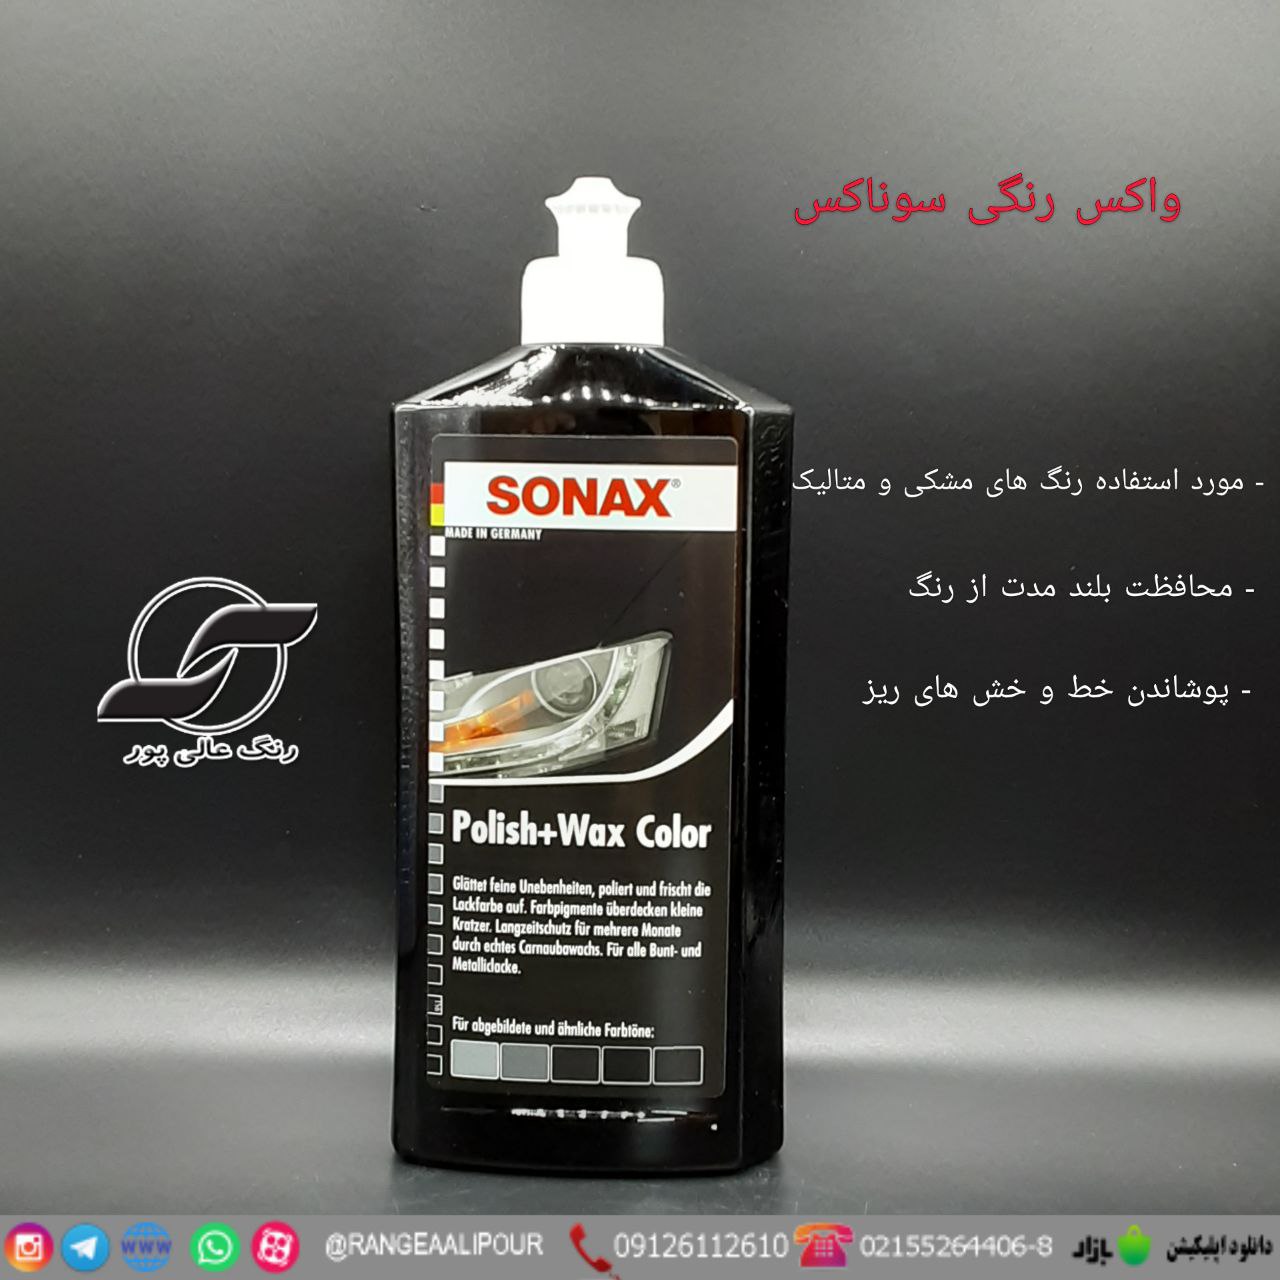 SONAX Polish & Wax Color